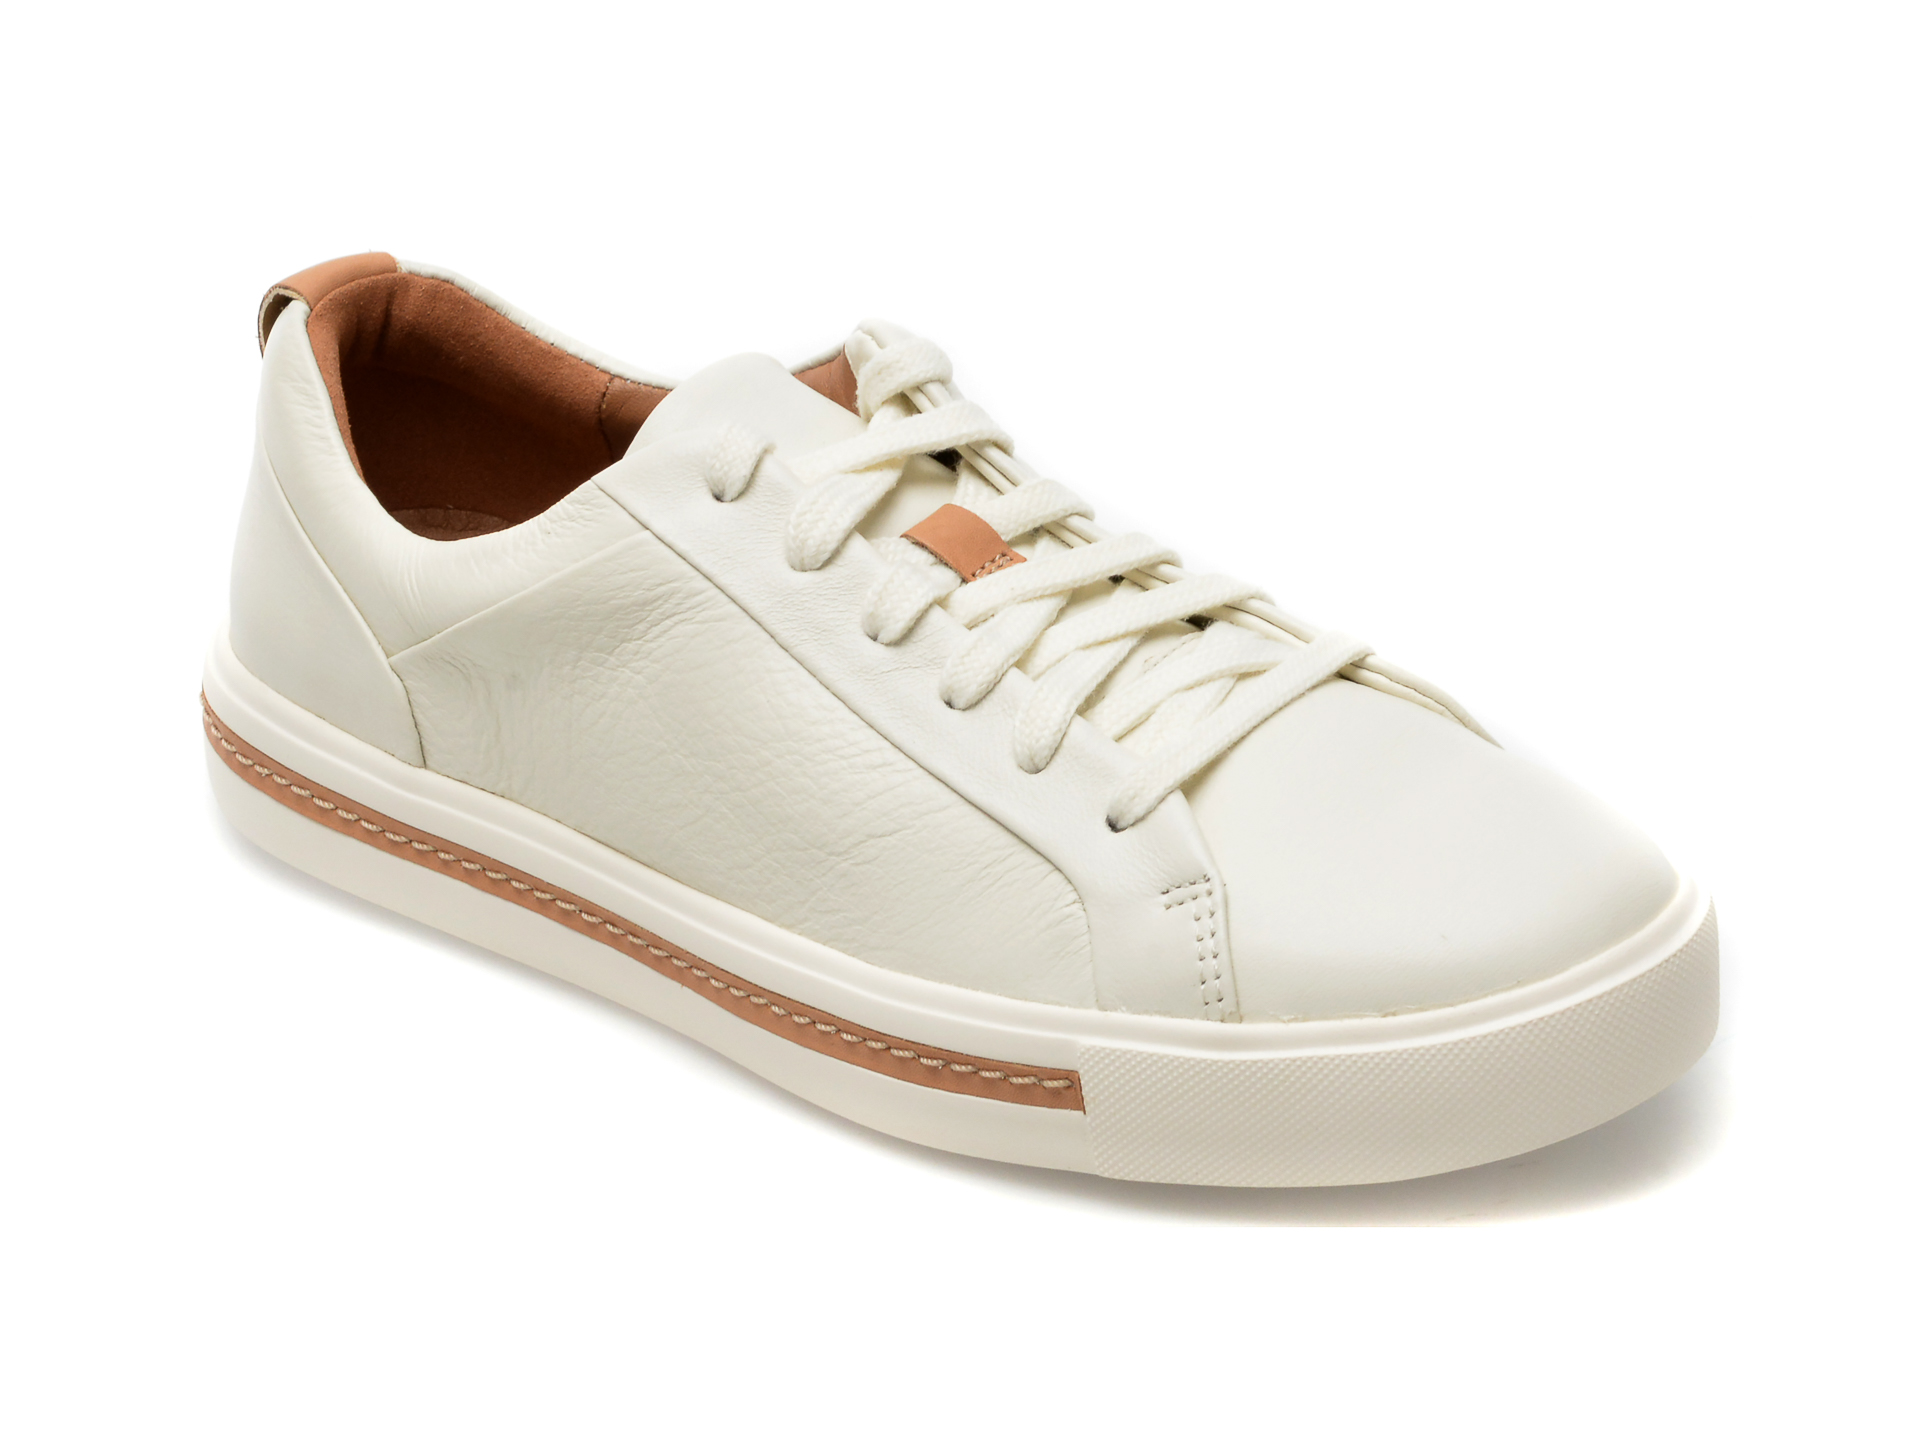 Pantofi CLARKS albi, UN MAUI LACE 13-N, din piele naturala Answear 2023-06-08